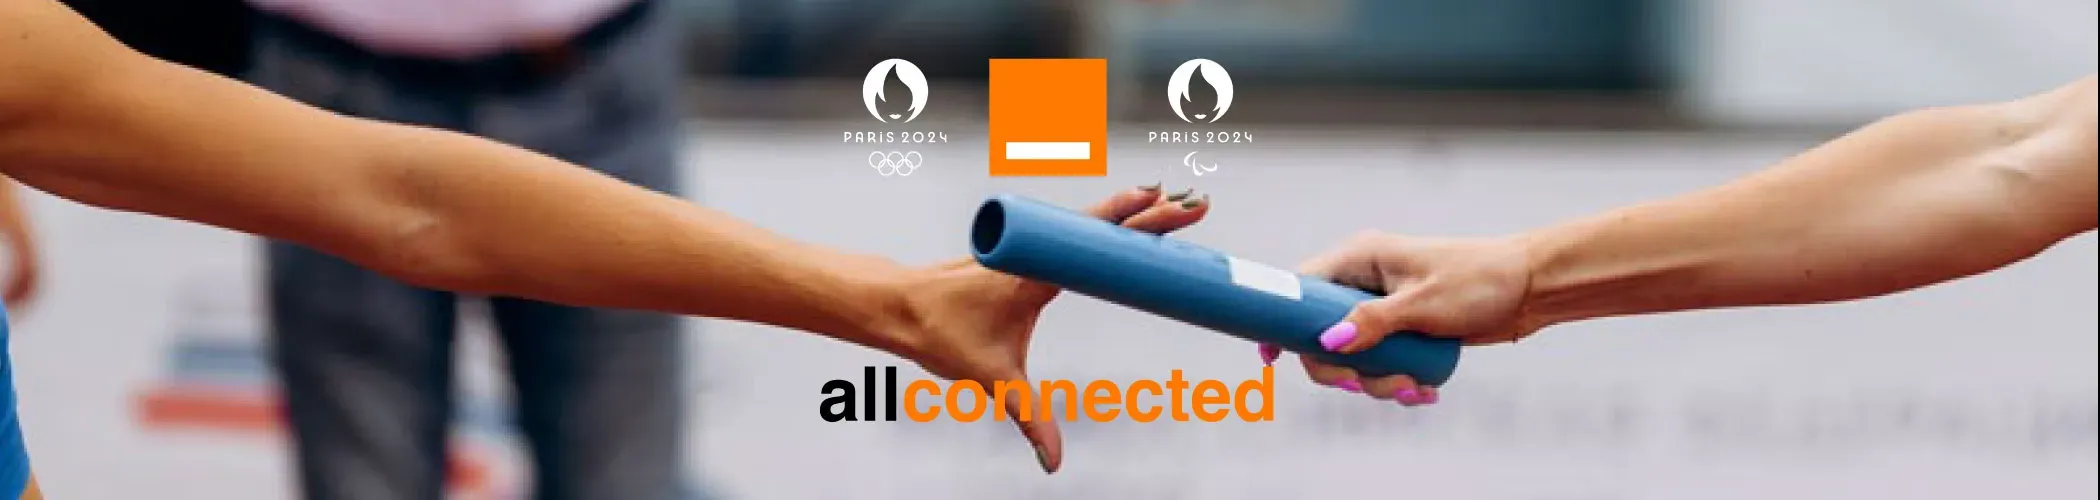 Orange 5G Olympics